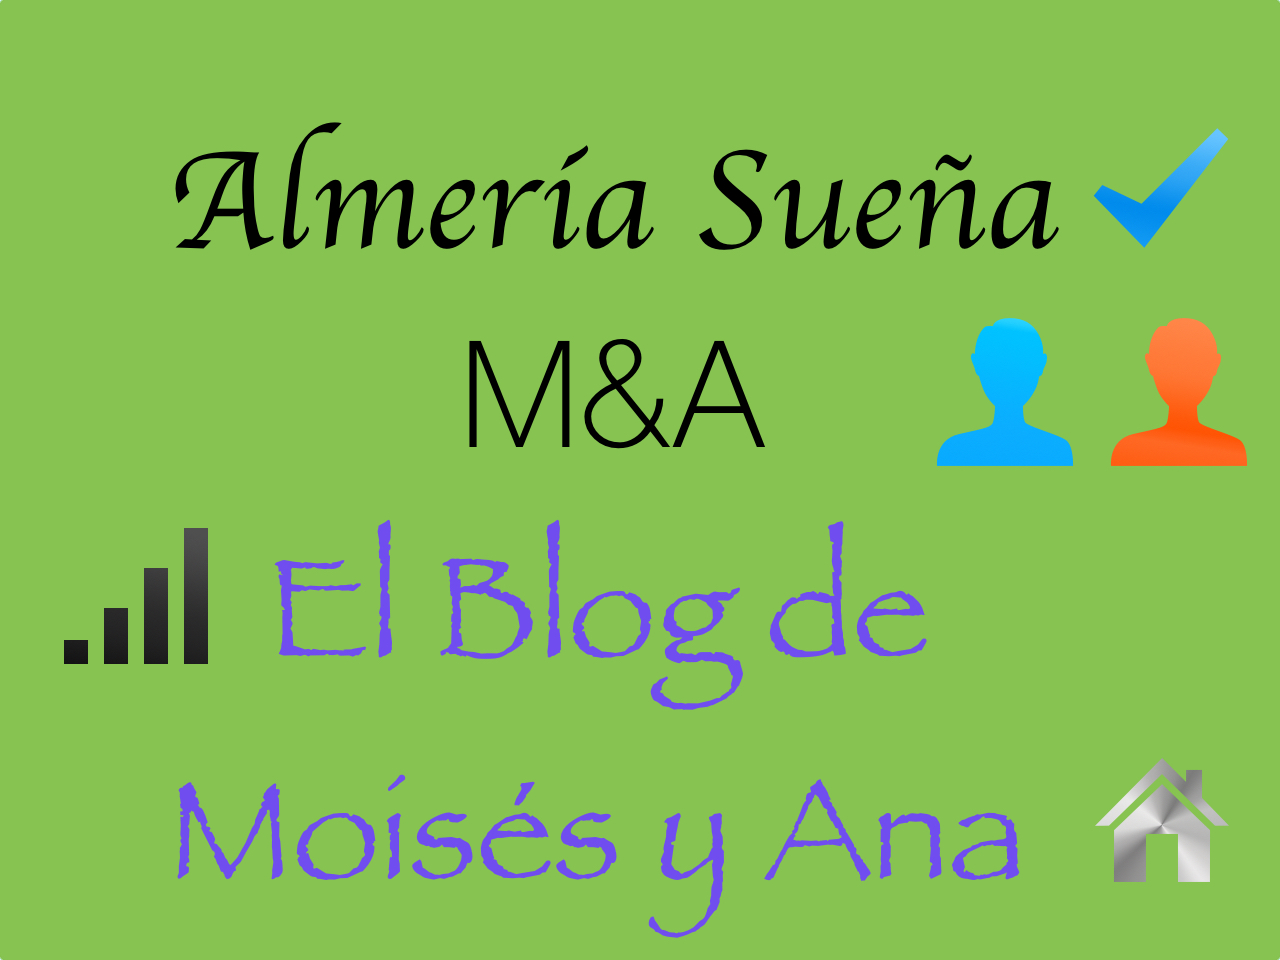 Almería Sueña M & A